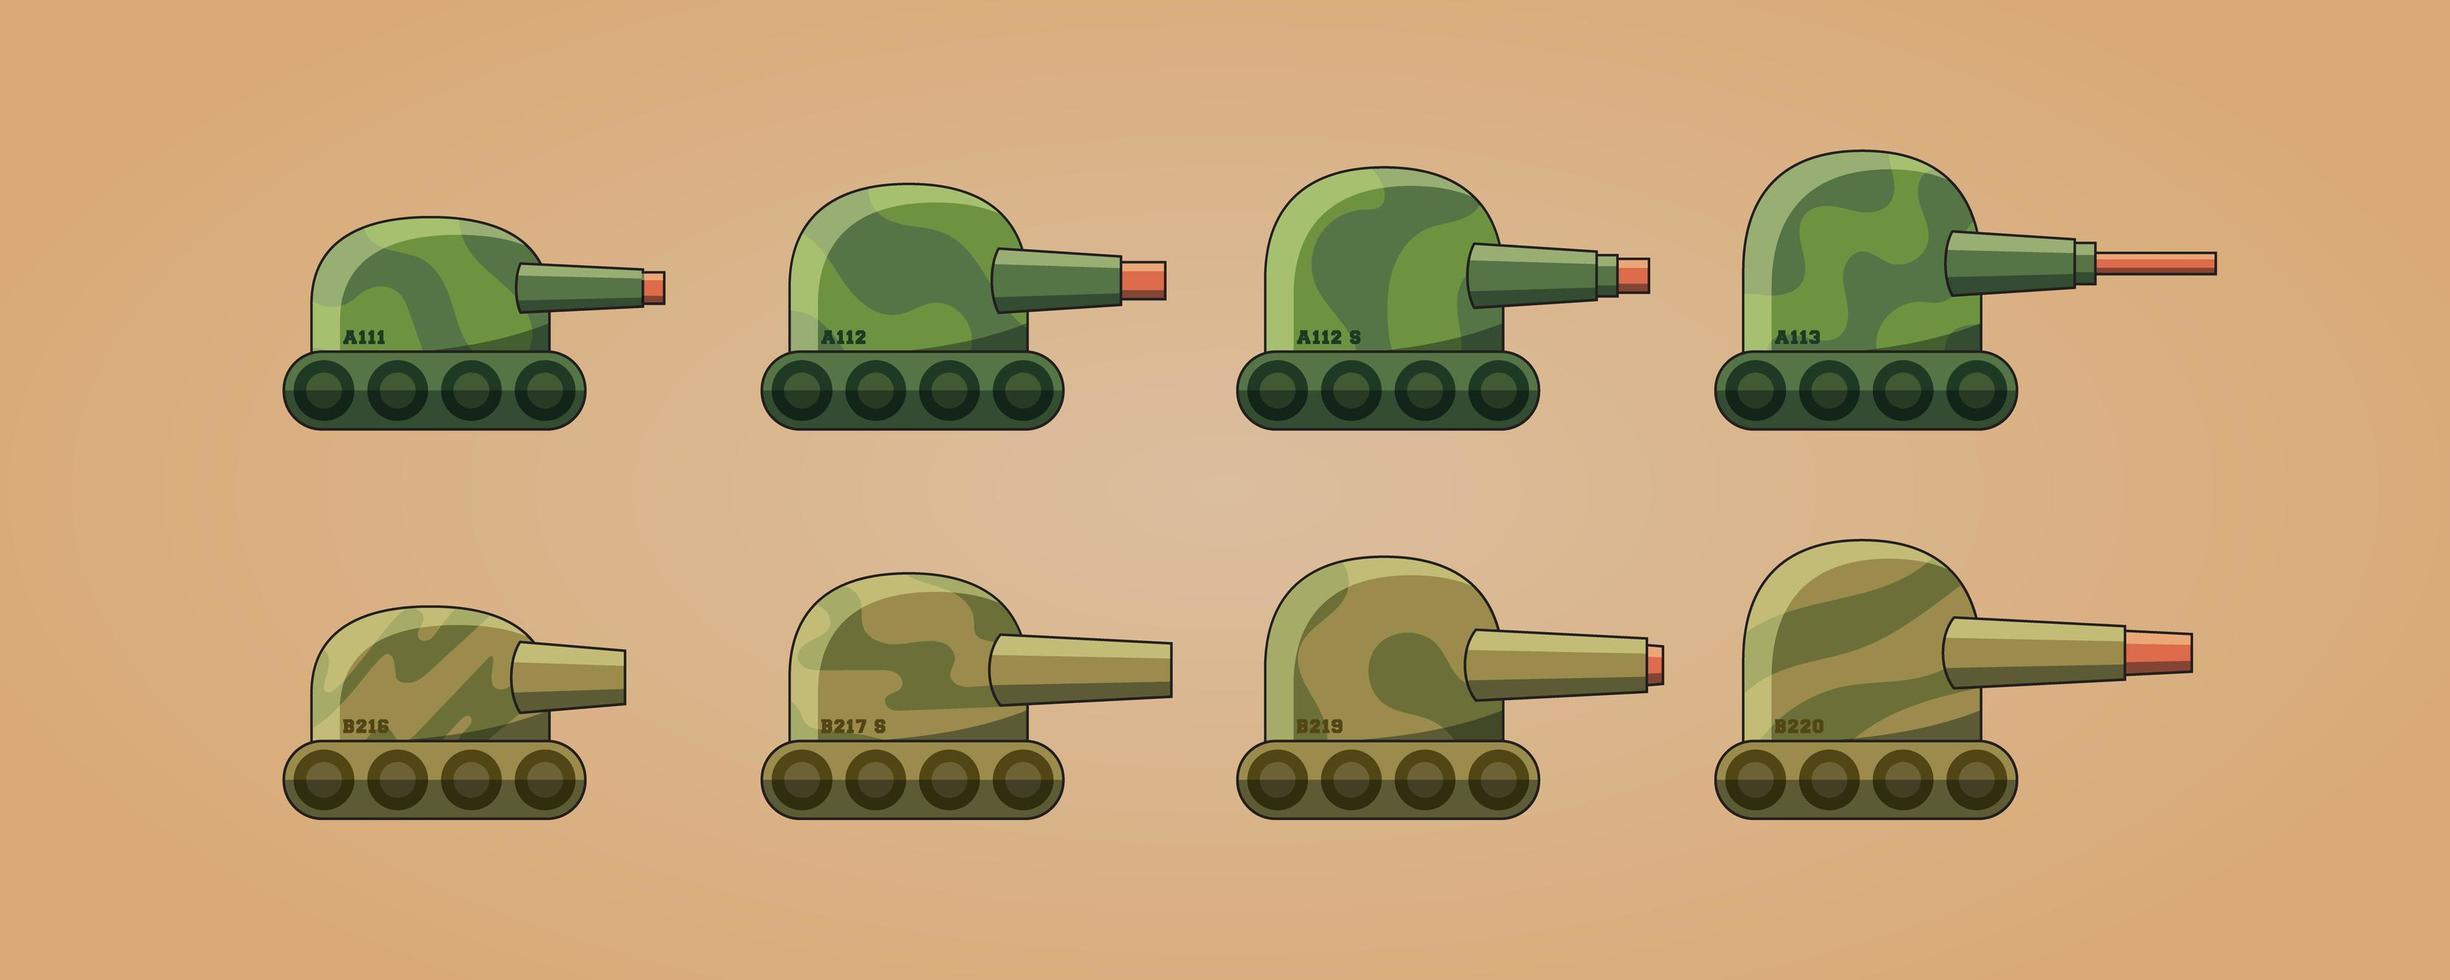 kamouflerade stridsvagnar för öknen och skogen. vektor